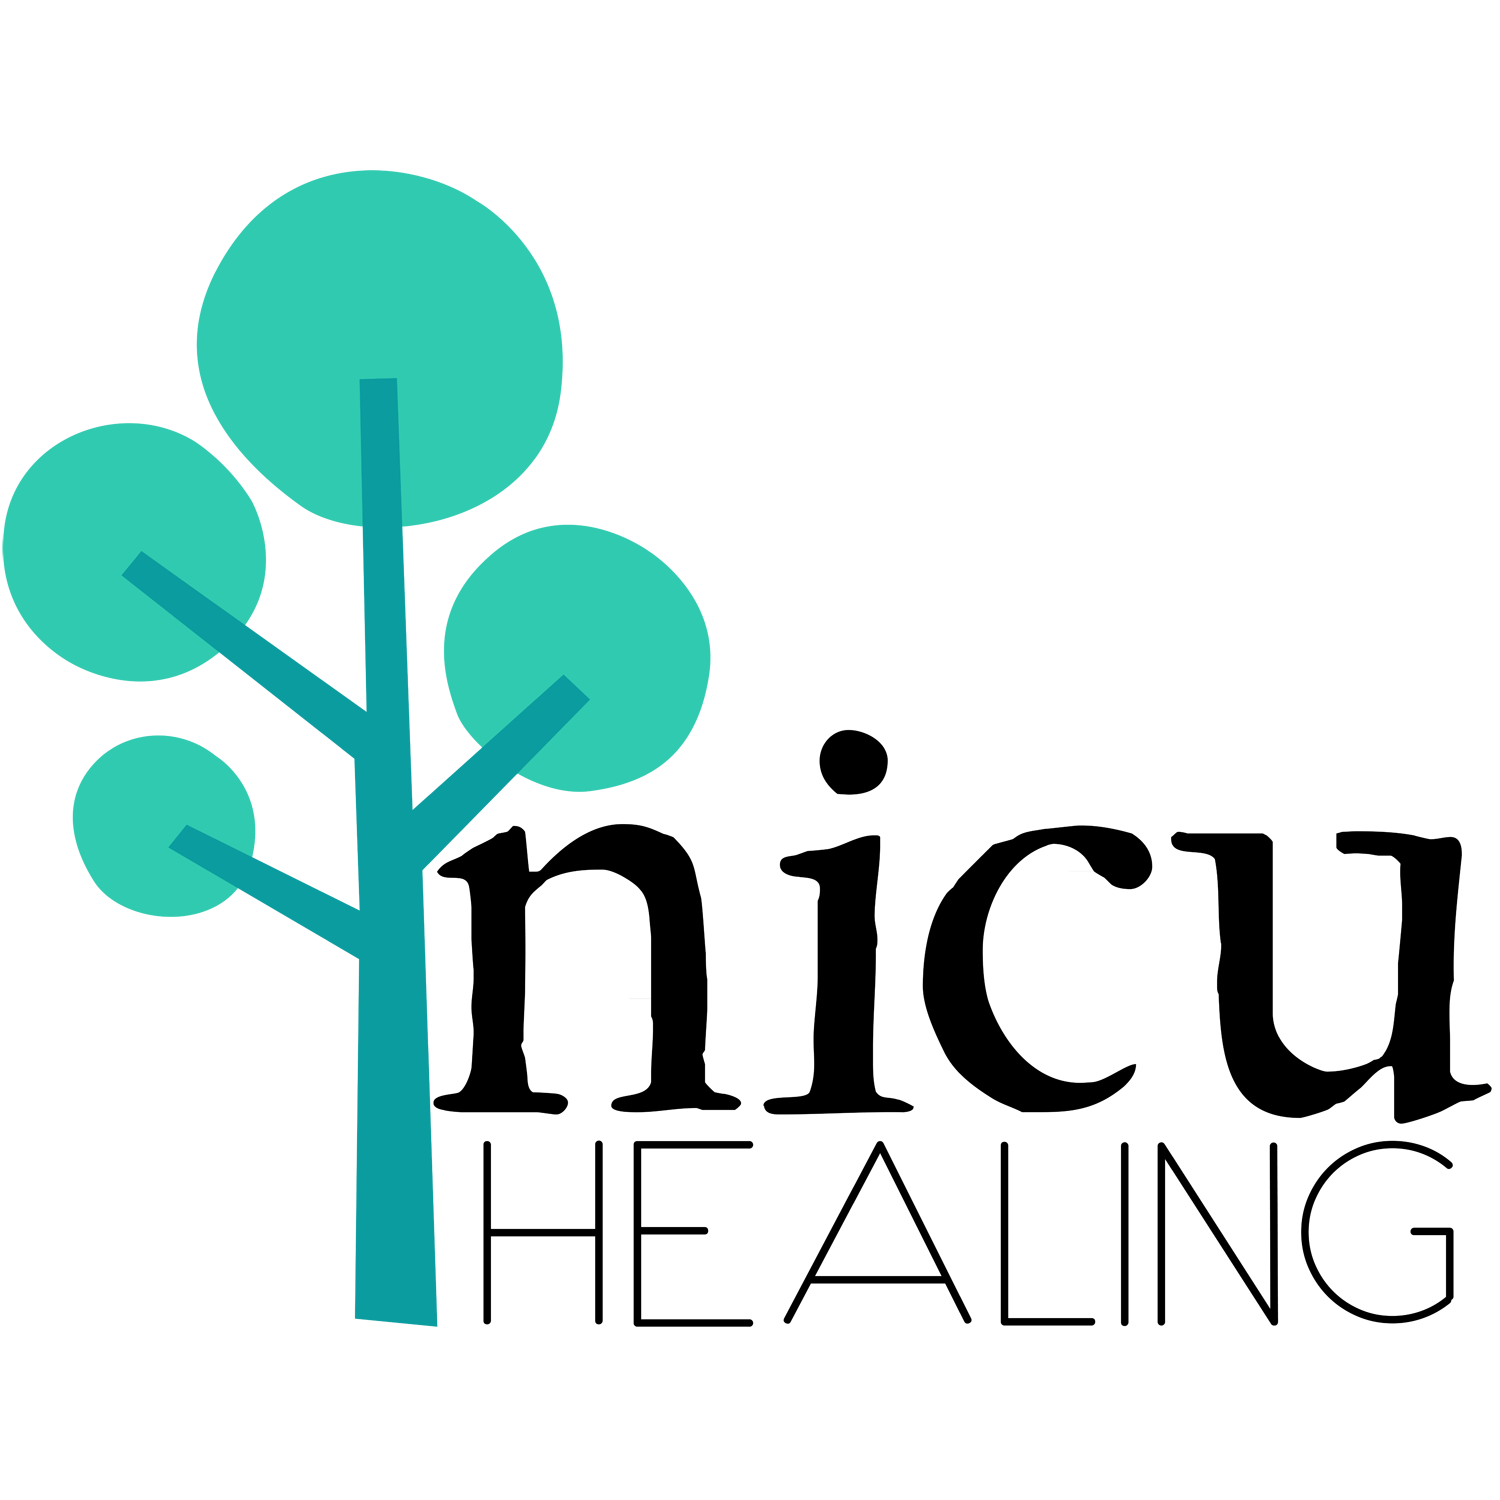 Kangaroo Care Logo - Kangaroo Care and Therapeutic Touch — NICU Healing